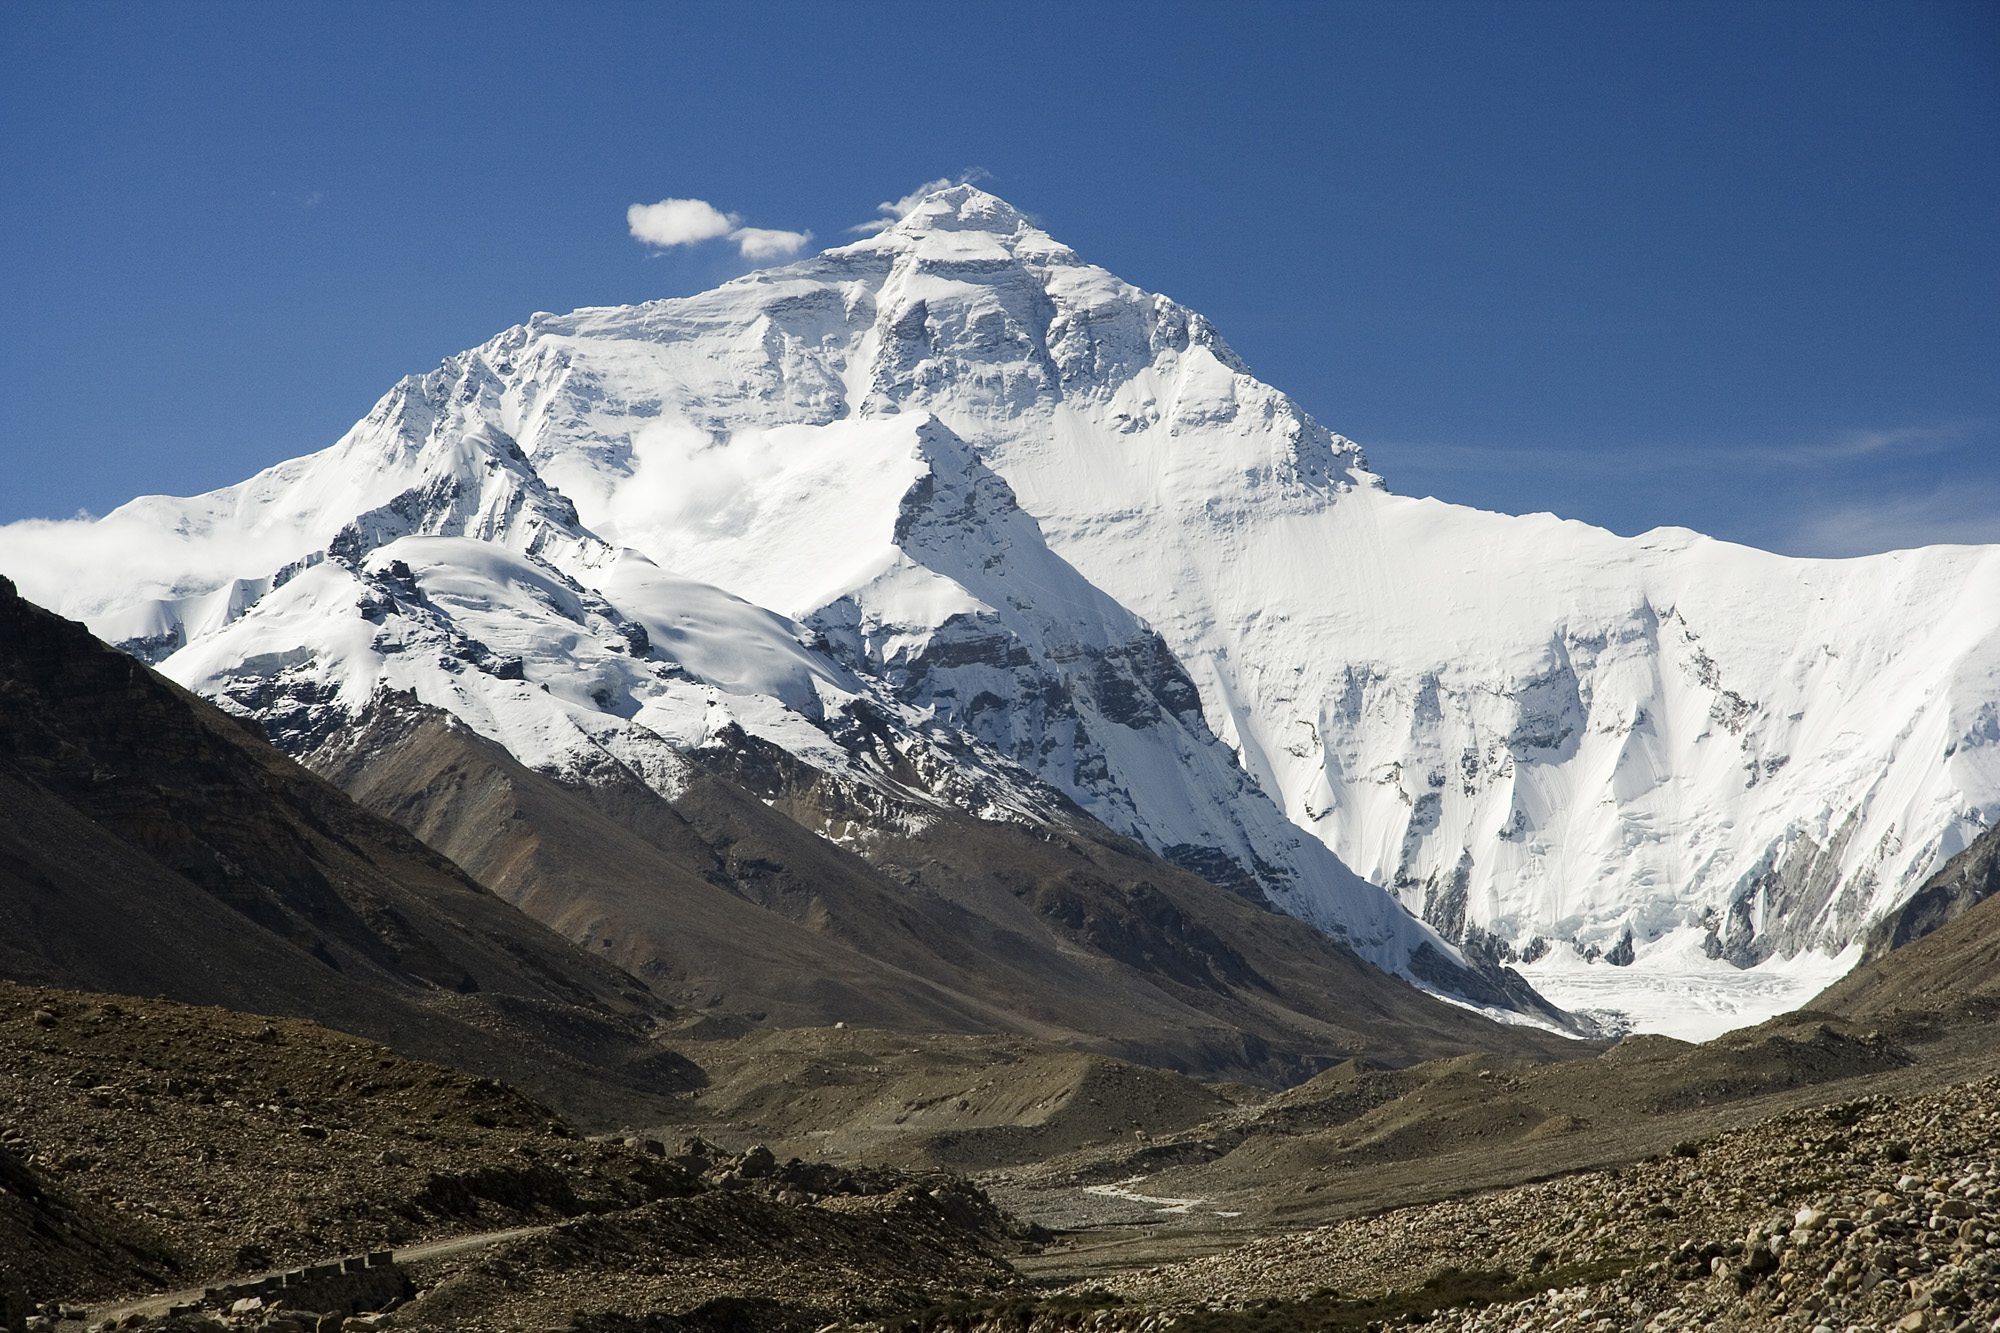 Everest_North_Face_toward_Base_Camp_Tibet_Luca_Galuzzi_2006.jpg - 882,53 kB